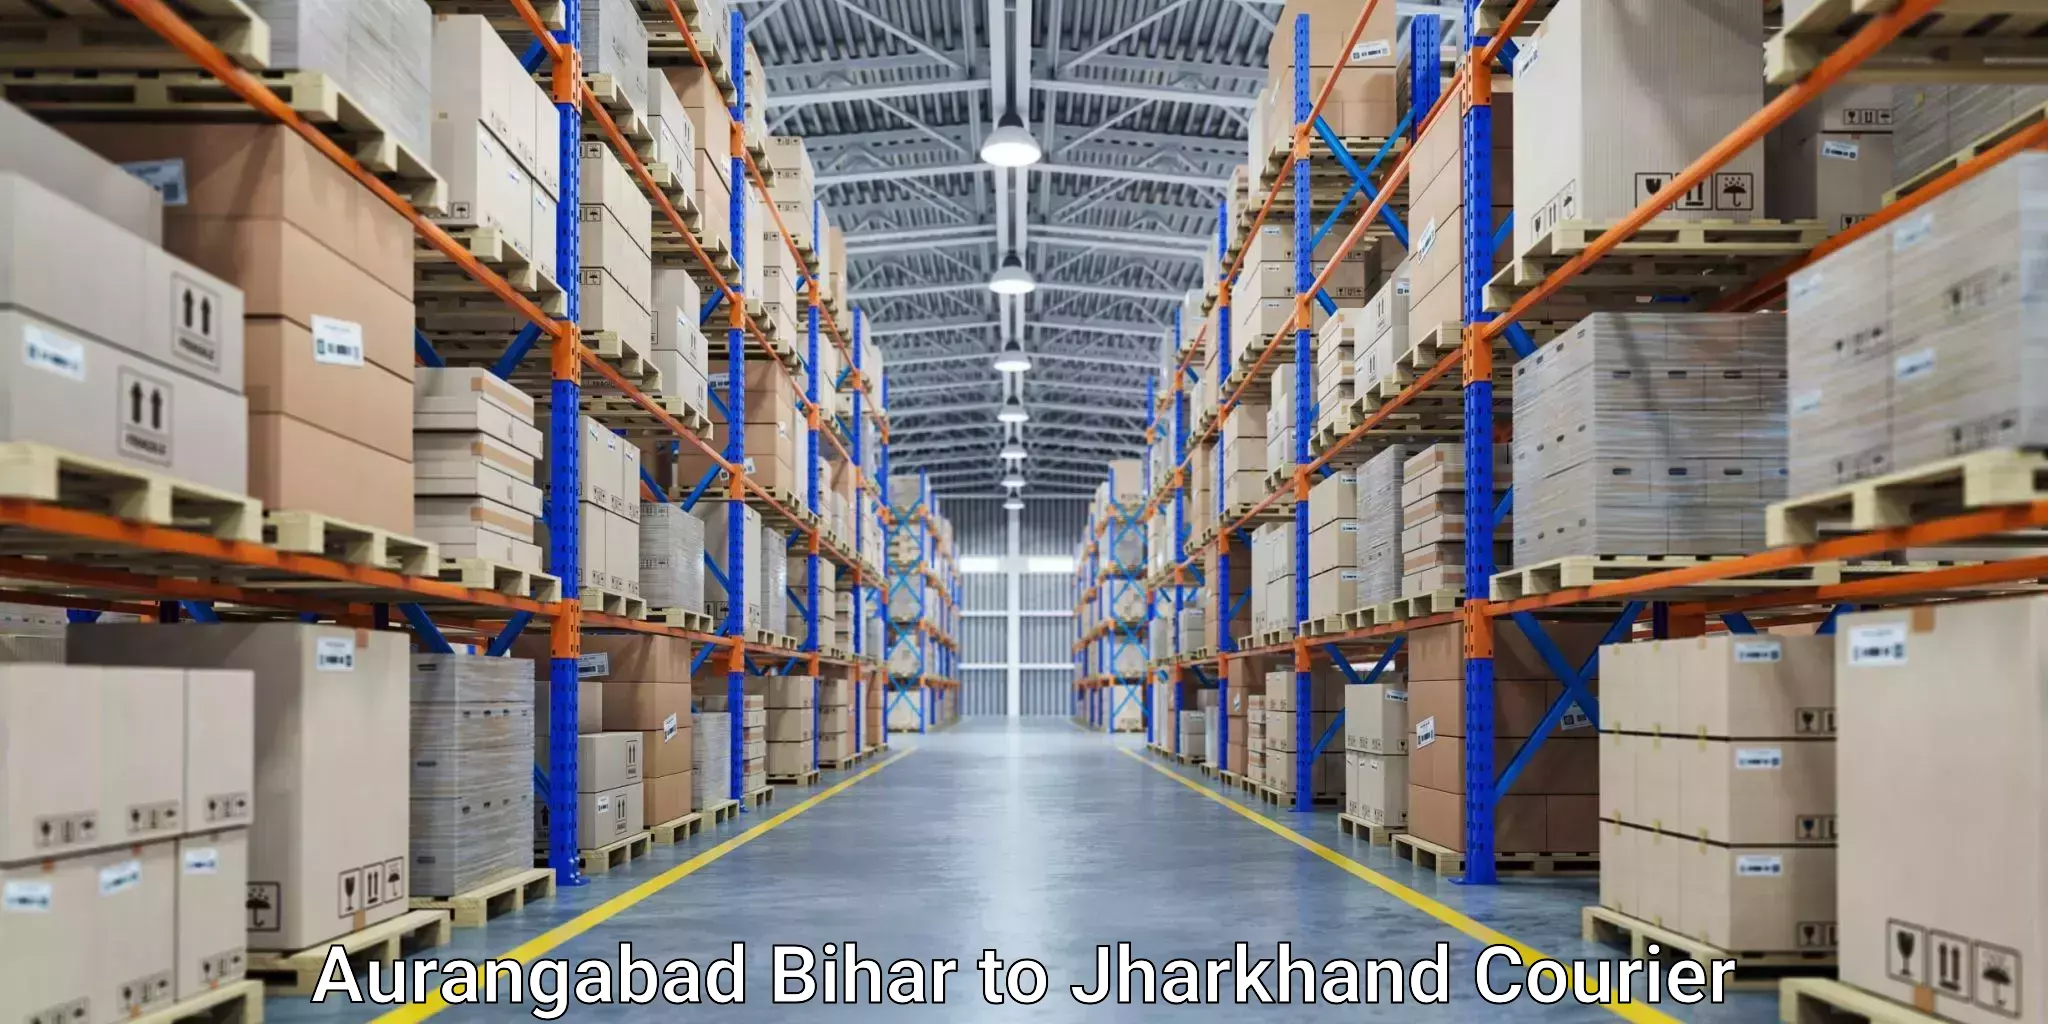 Next day courier Aurangabad Bihar to Jharkhand